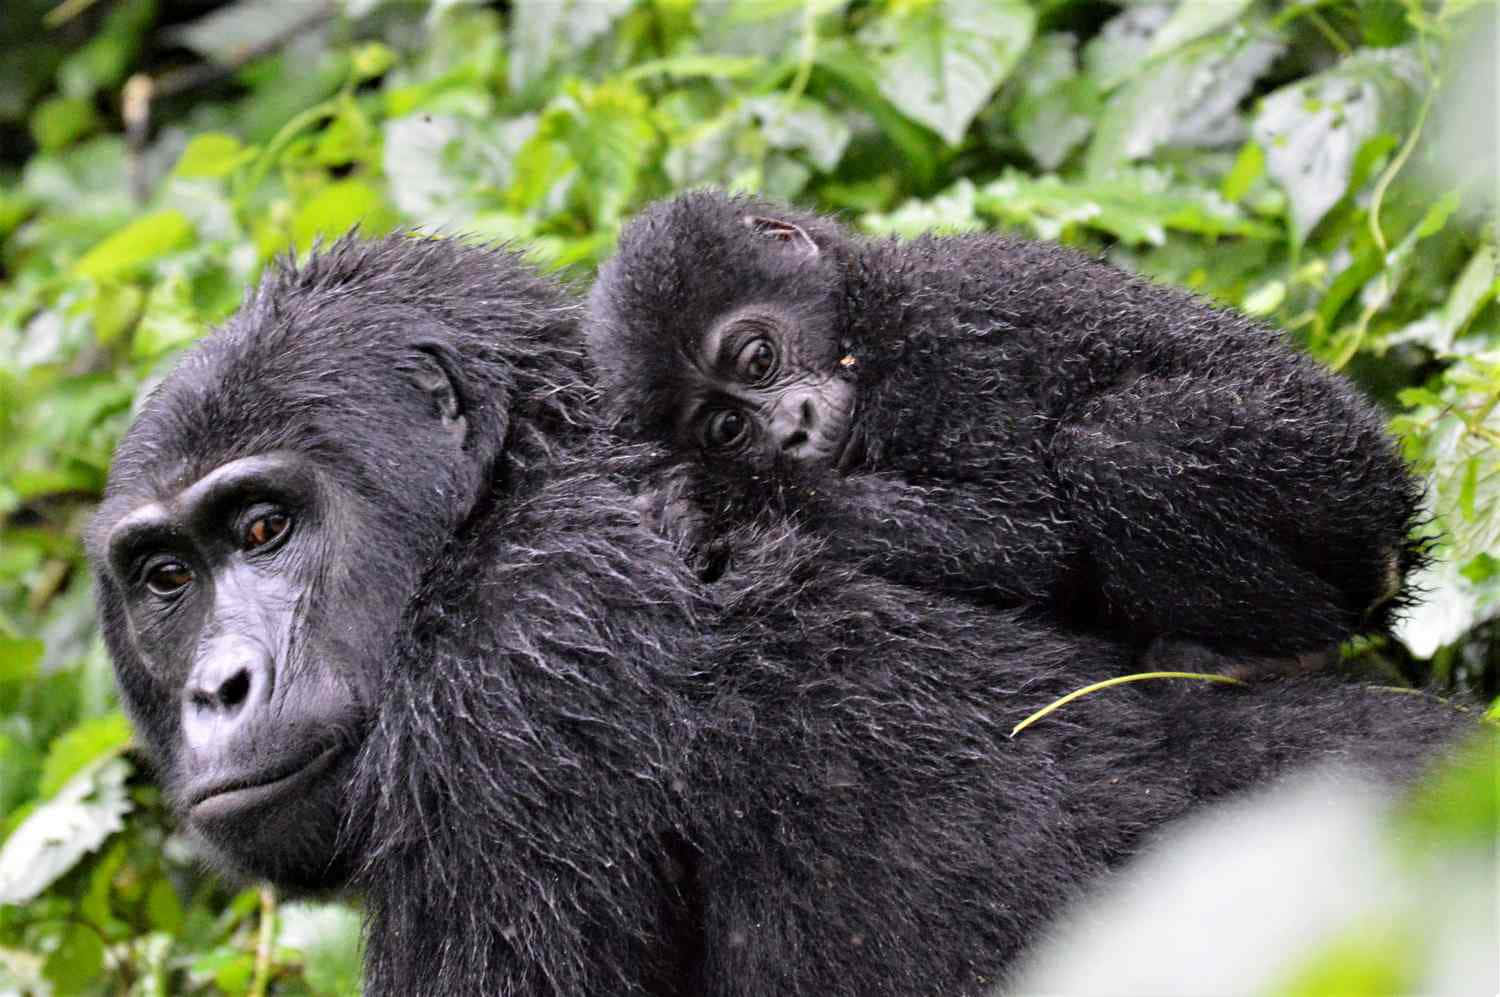 Umbelo Close-up De Um Gorila Das Montanhas Adulto Em Seu Habitat Natural.